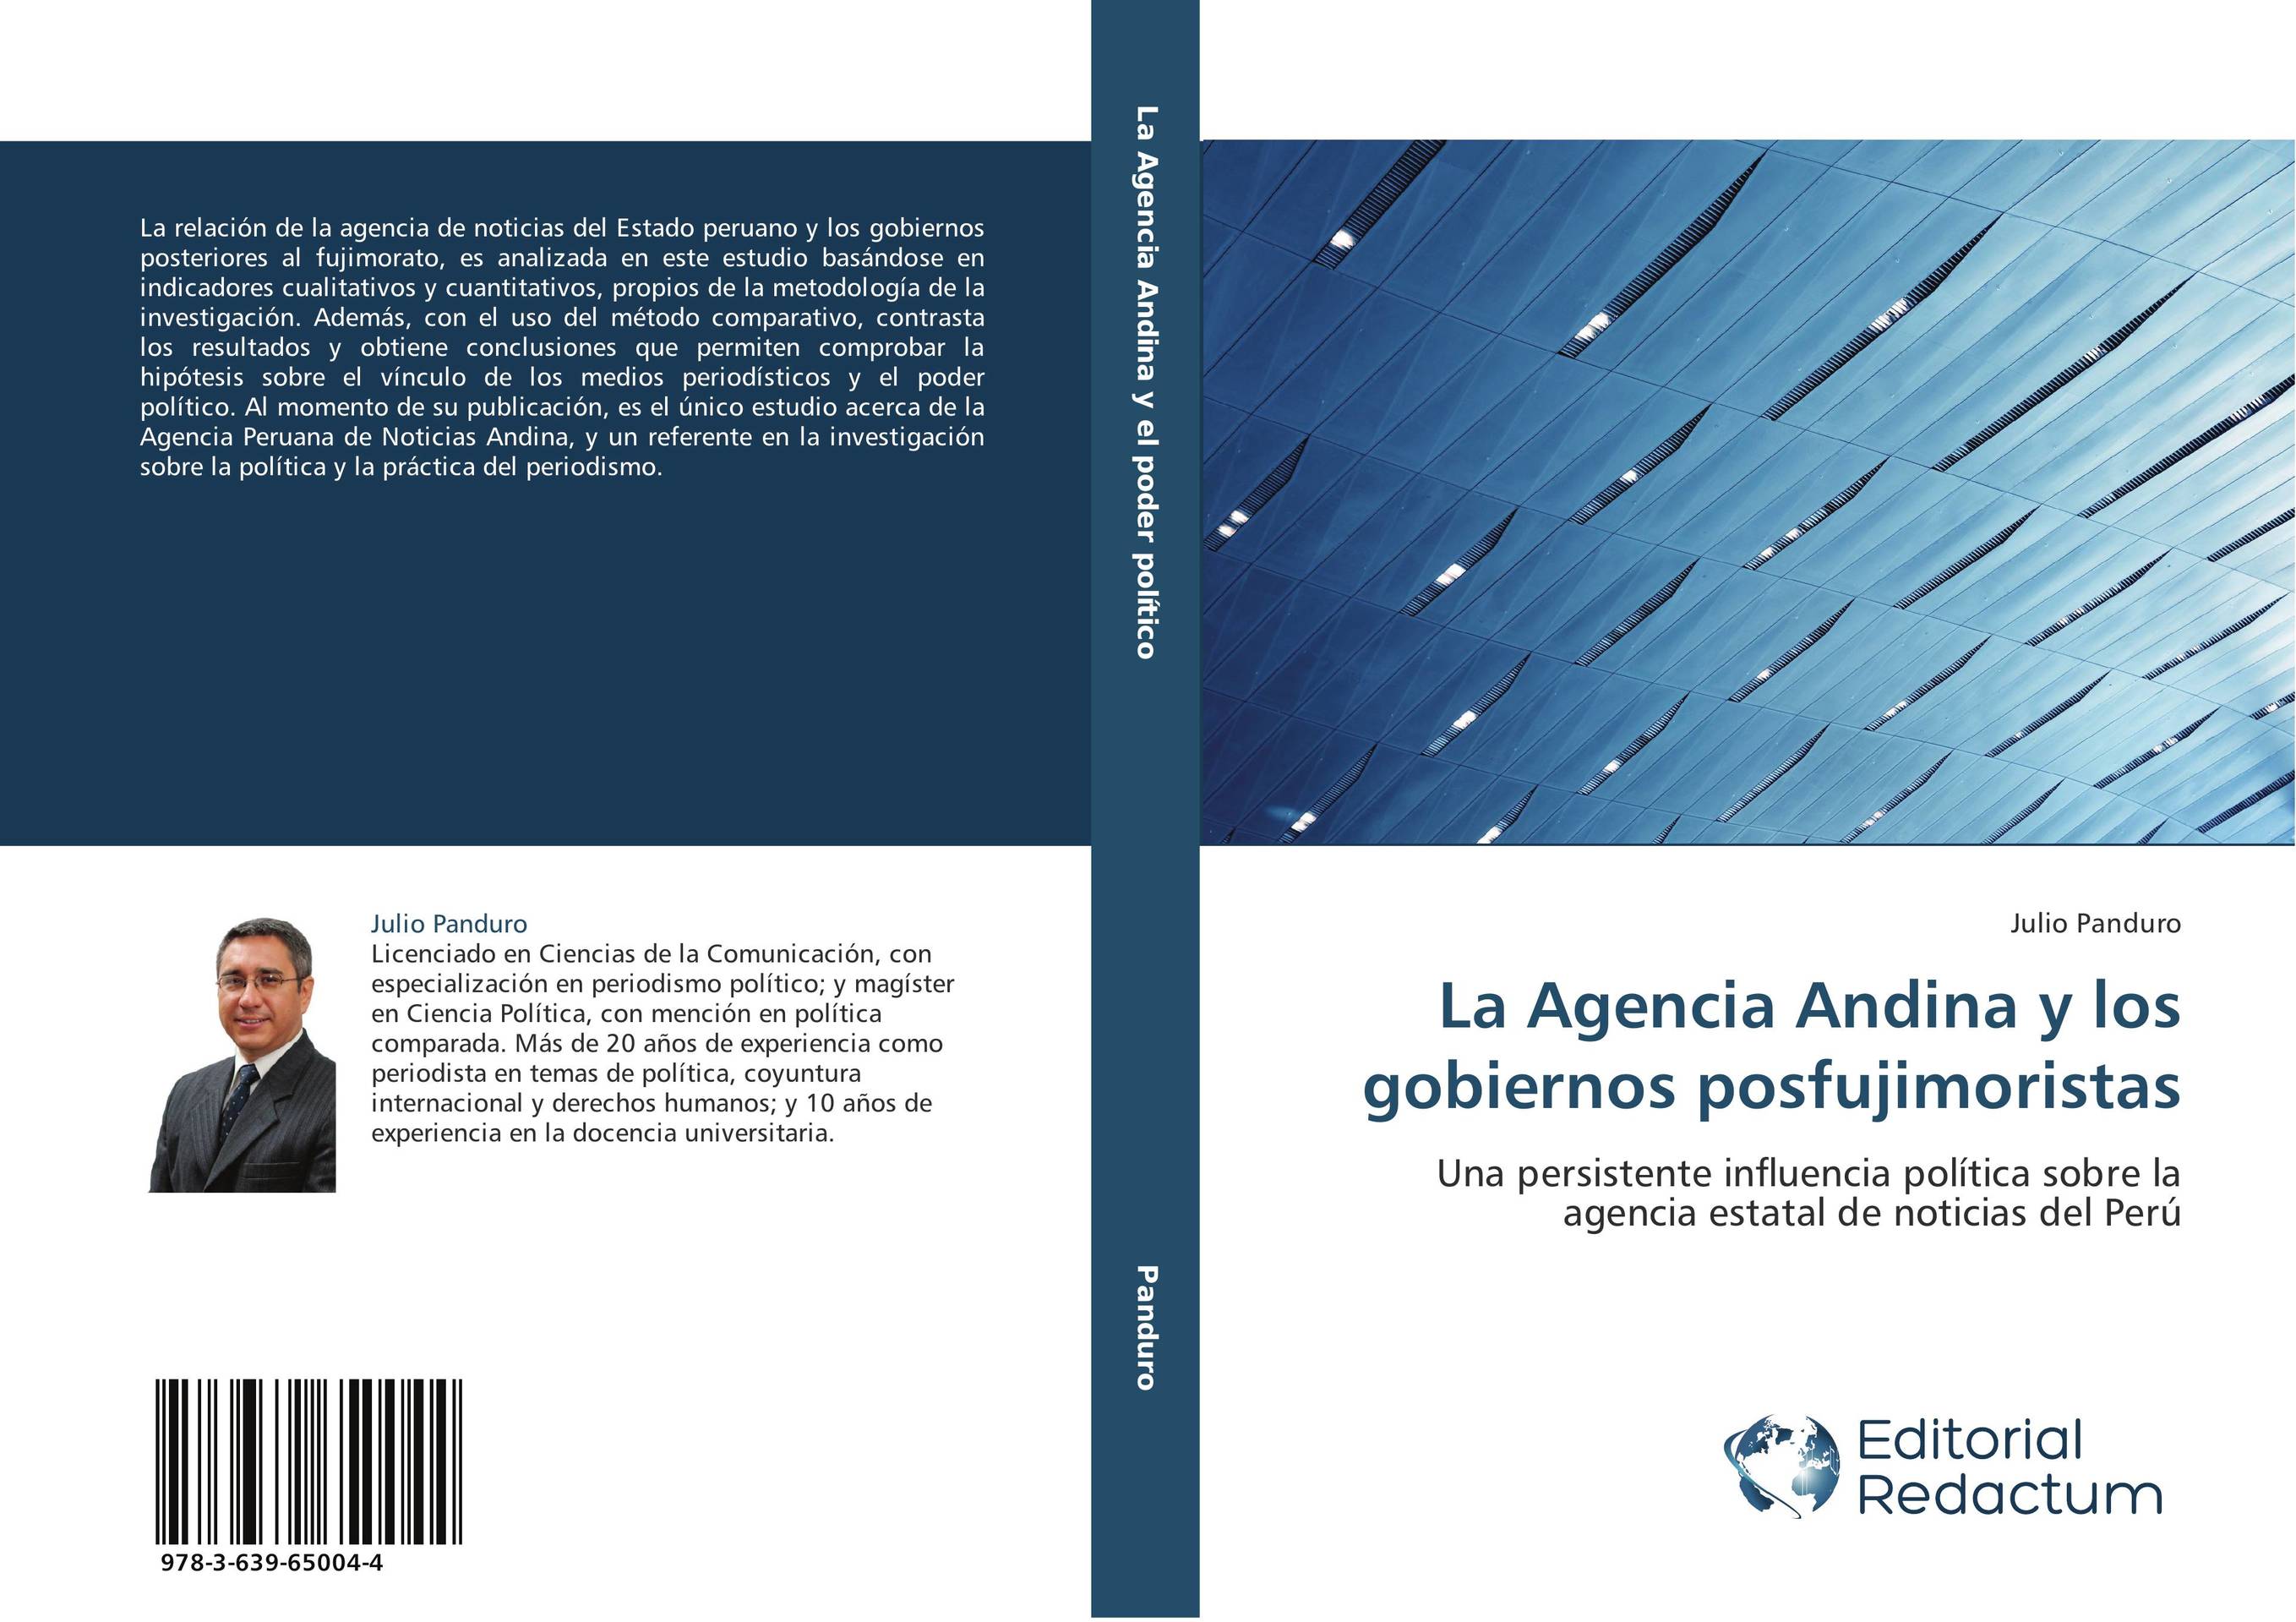 La Agencia Andina y los gobiernos posfujimoristas